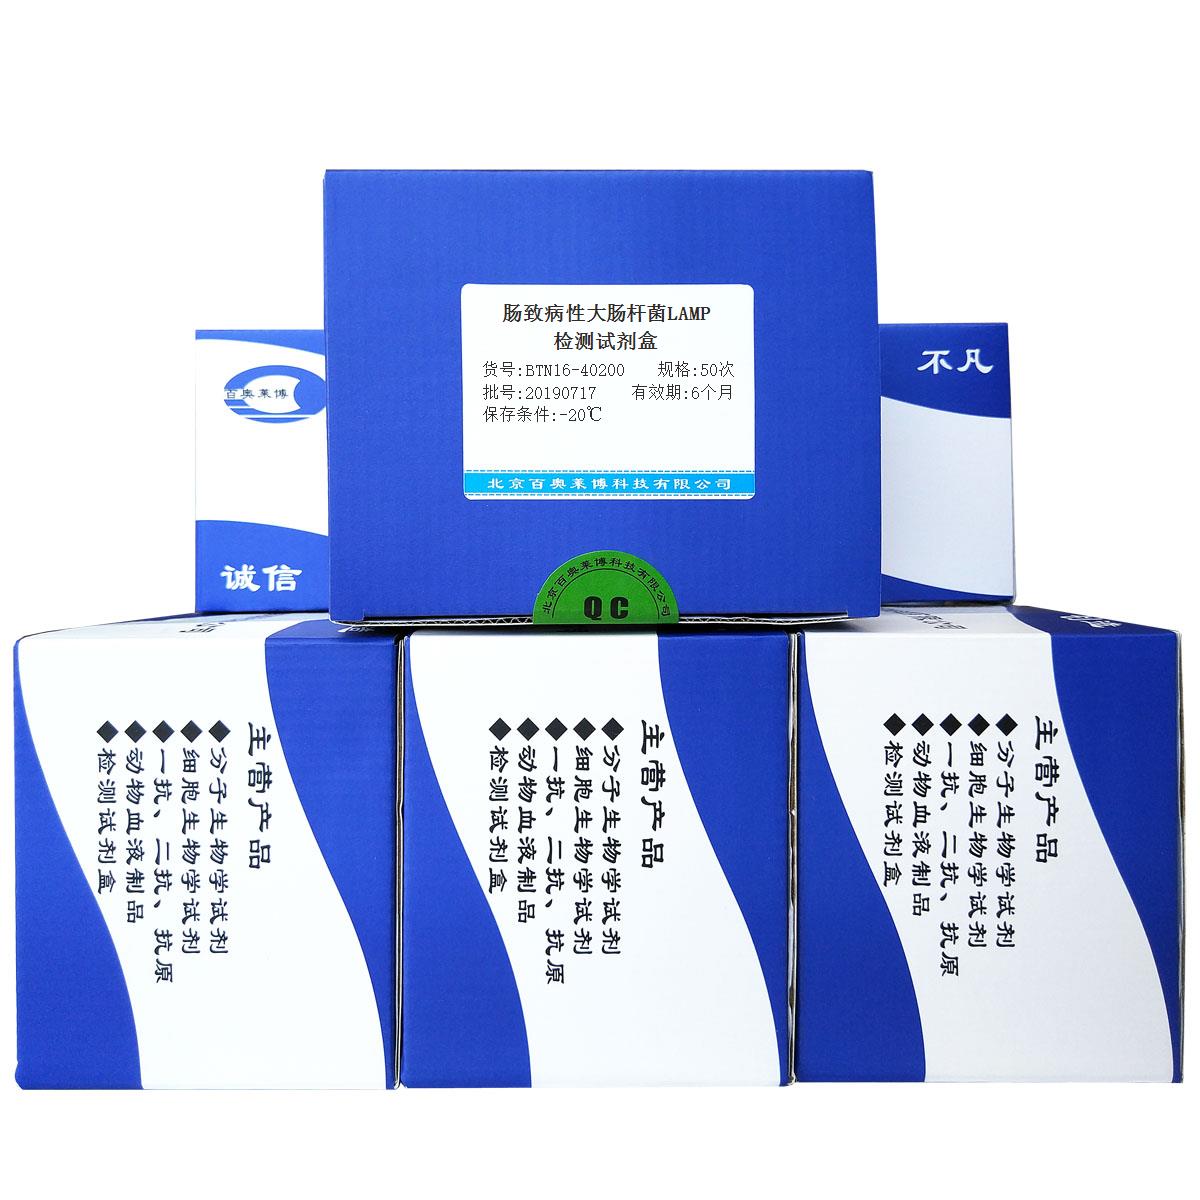 肠致病性大肠杆菌LAMP检测试剂盒北京厂家